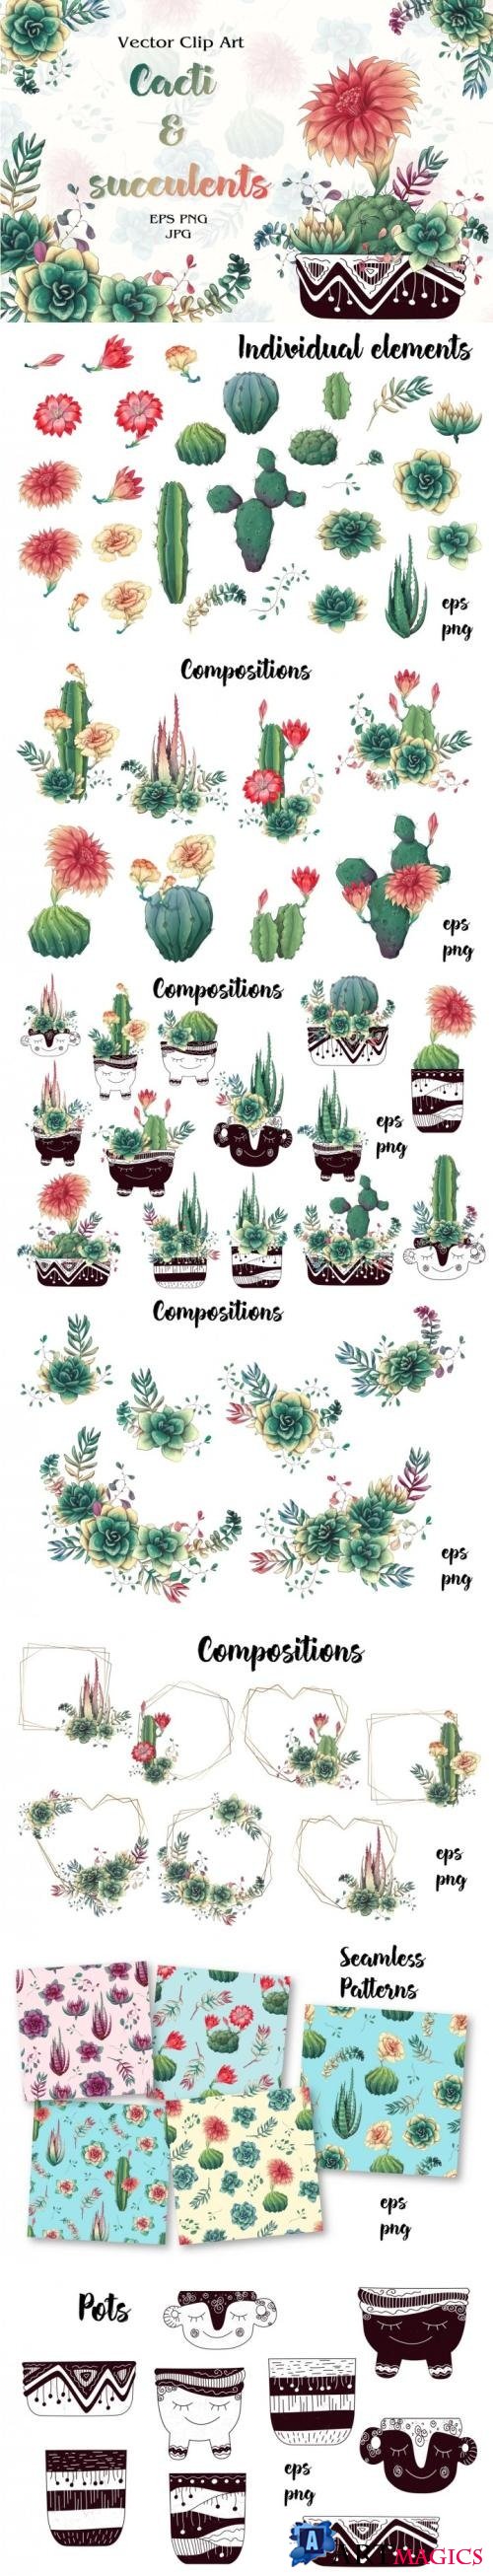 Thehungryjpeg - Cacti & Succulents - 3515603